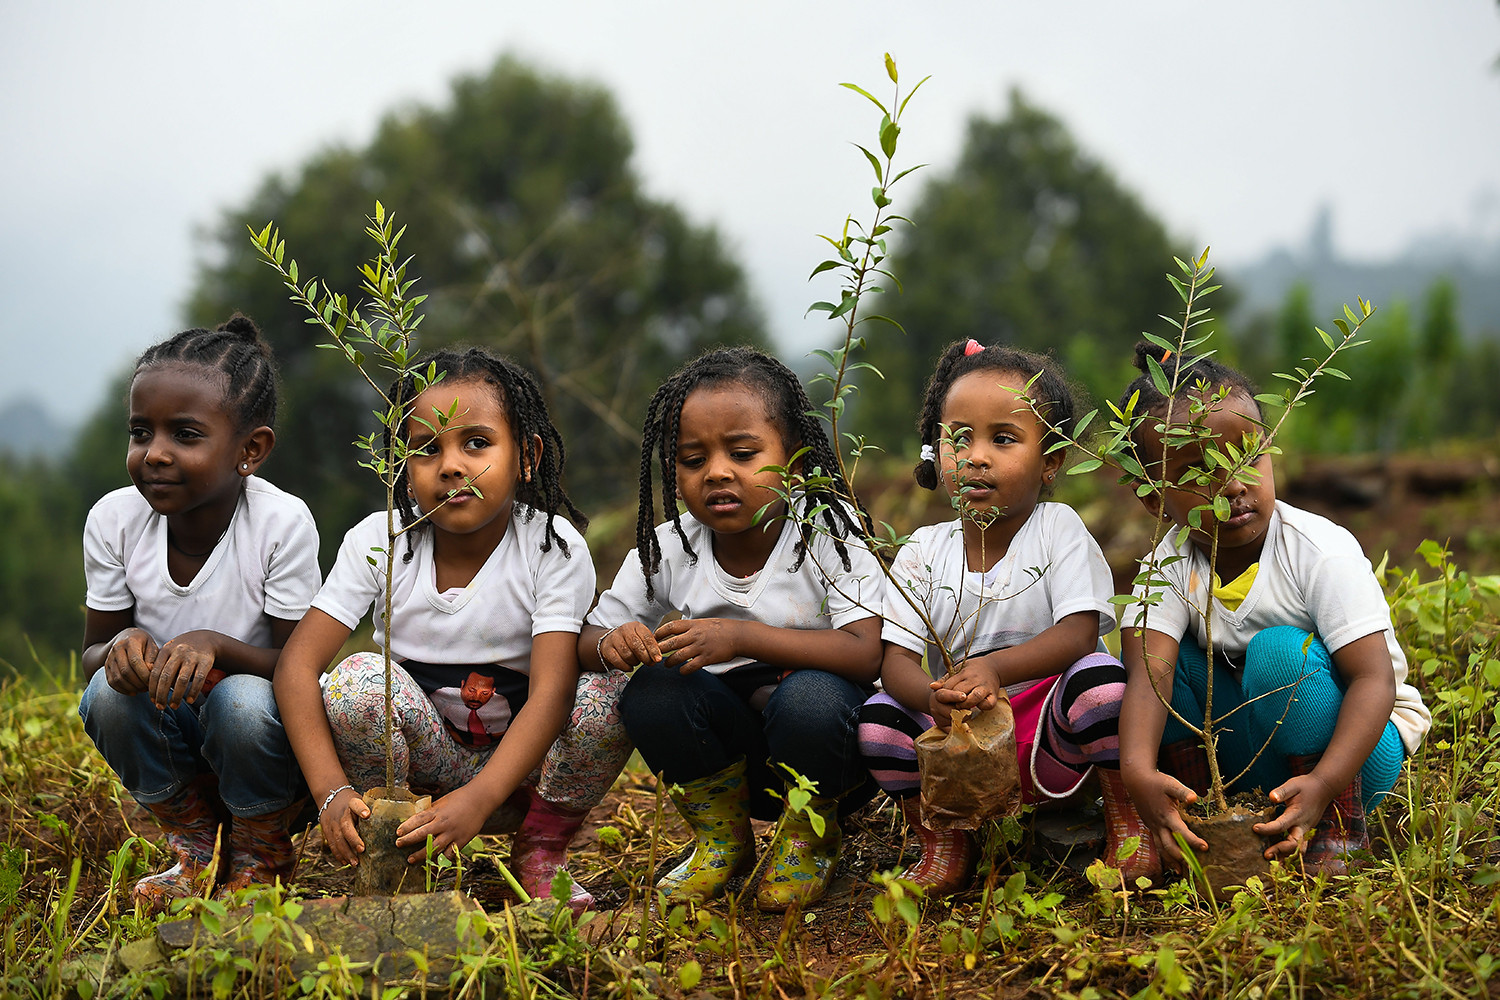   Các cô gái người Nigeria tham gia vào một hoạt động trồng cây quốc gia ở thủ đô Addis Ababa vào ngày 28/7. Ethiopia cho biết họ có kế hoạch trồng 4 tỷ cây vào tháng 10 như một phần của phong trào toàn cầu để khôi phục rừng và giúp chống biến đổi khí hậu.  